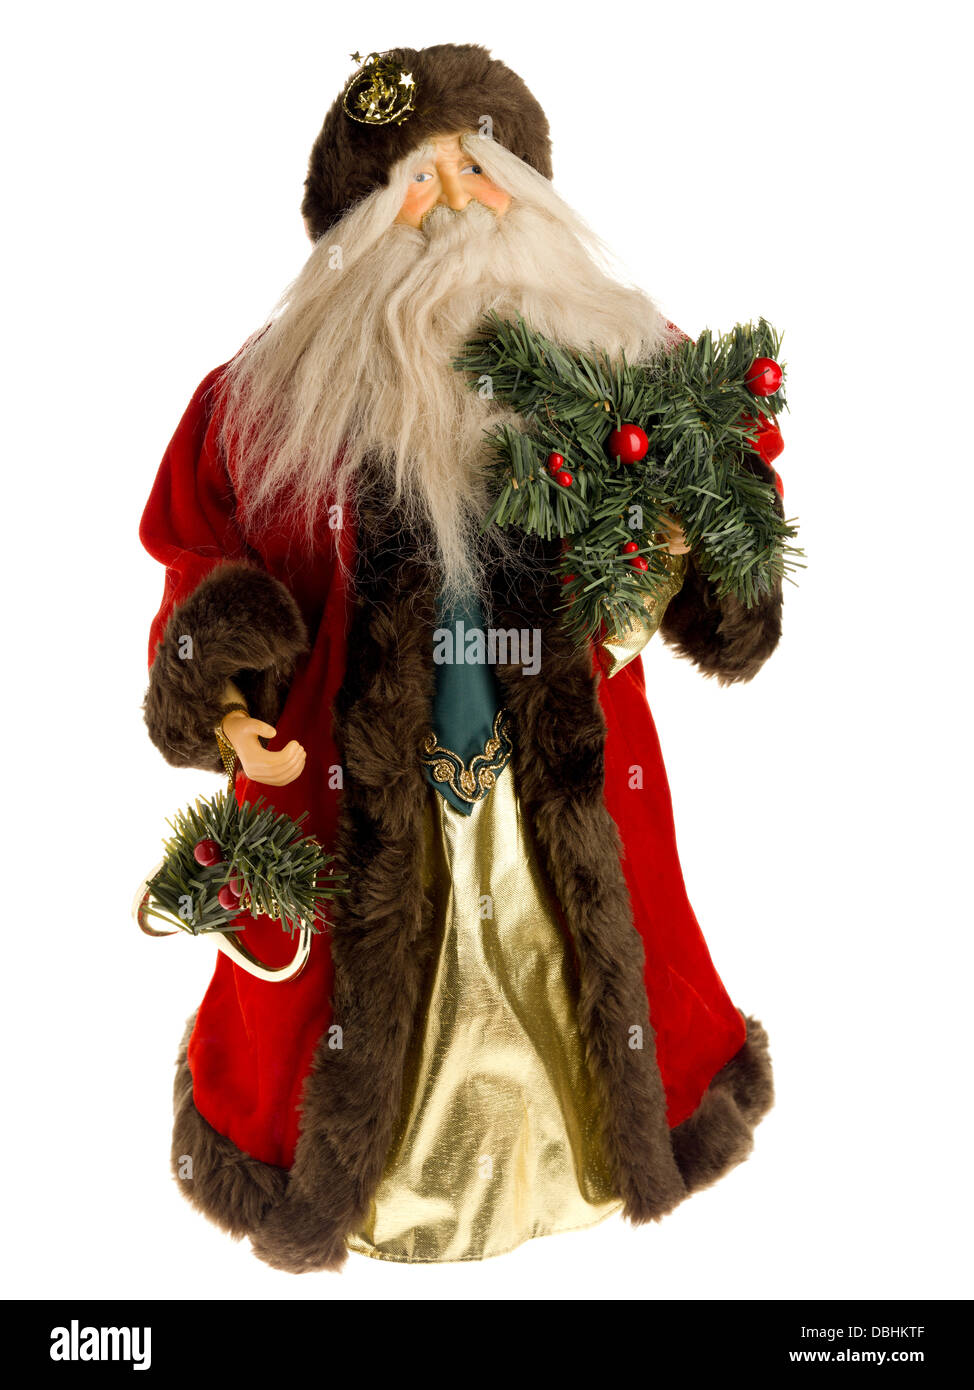 Santa Claus figurine Banque D'Images